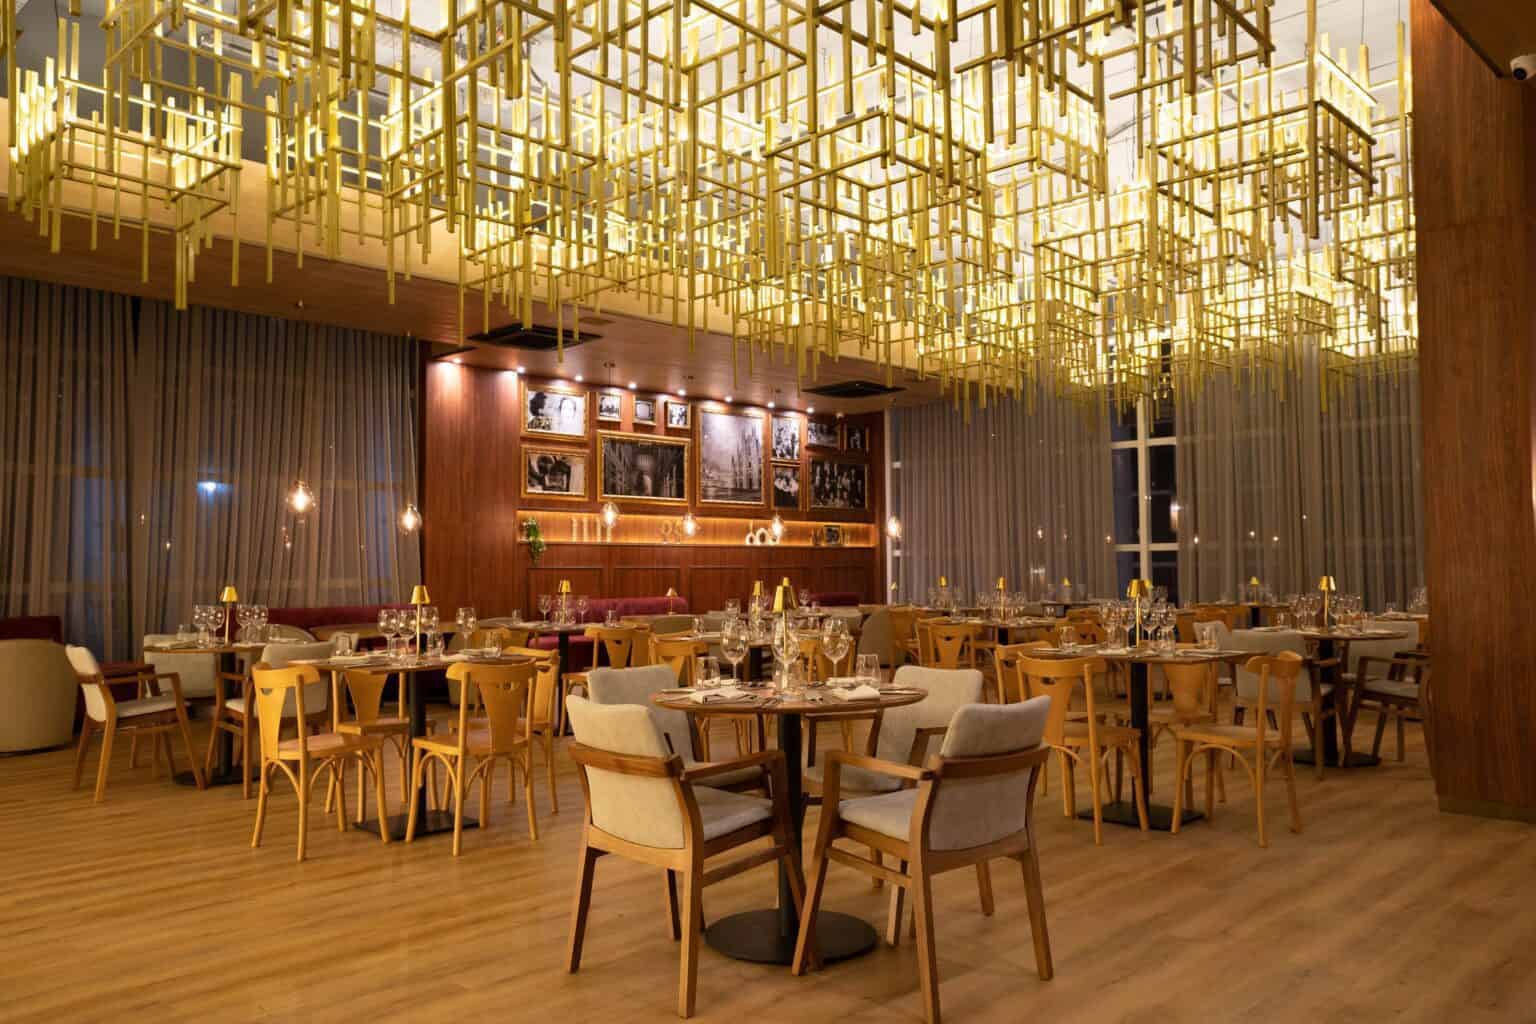 restaurante italiano exclusivo do Tauá ornamentado com luminárias contemporâneas douradas, quadros em preto e branco na parede e mesas postas em espaço amplo com grandes janelas.